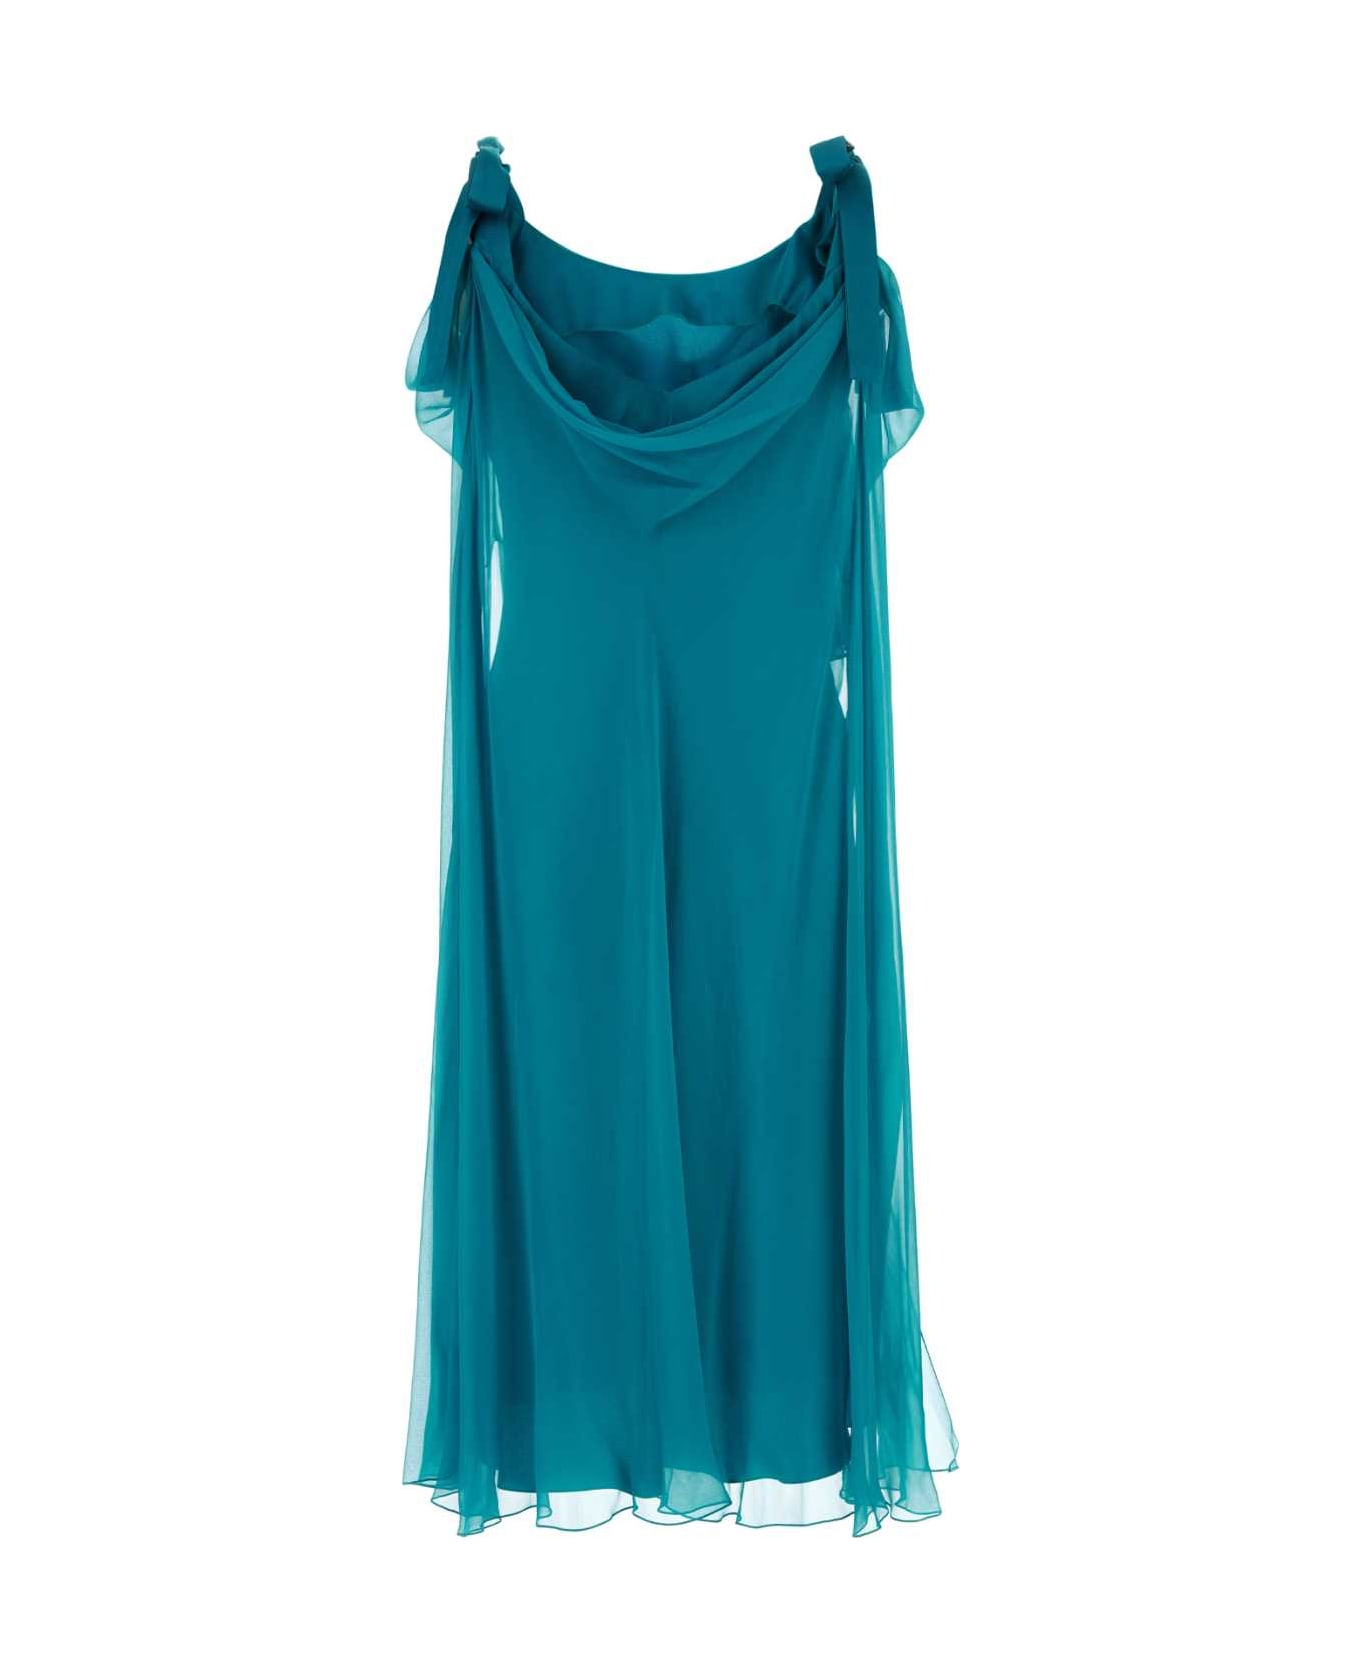 Alberta Ferretti Teal Green Silk Dress - VERDE